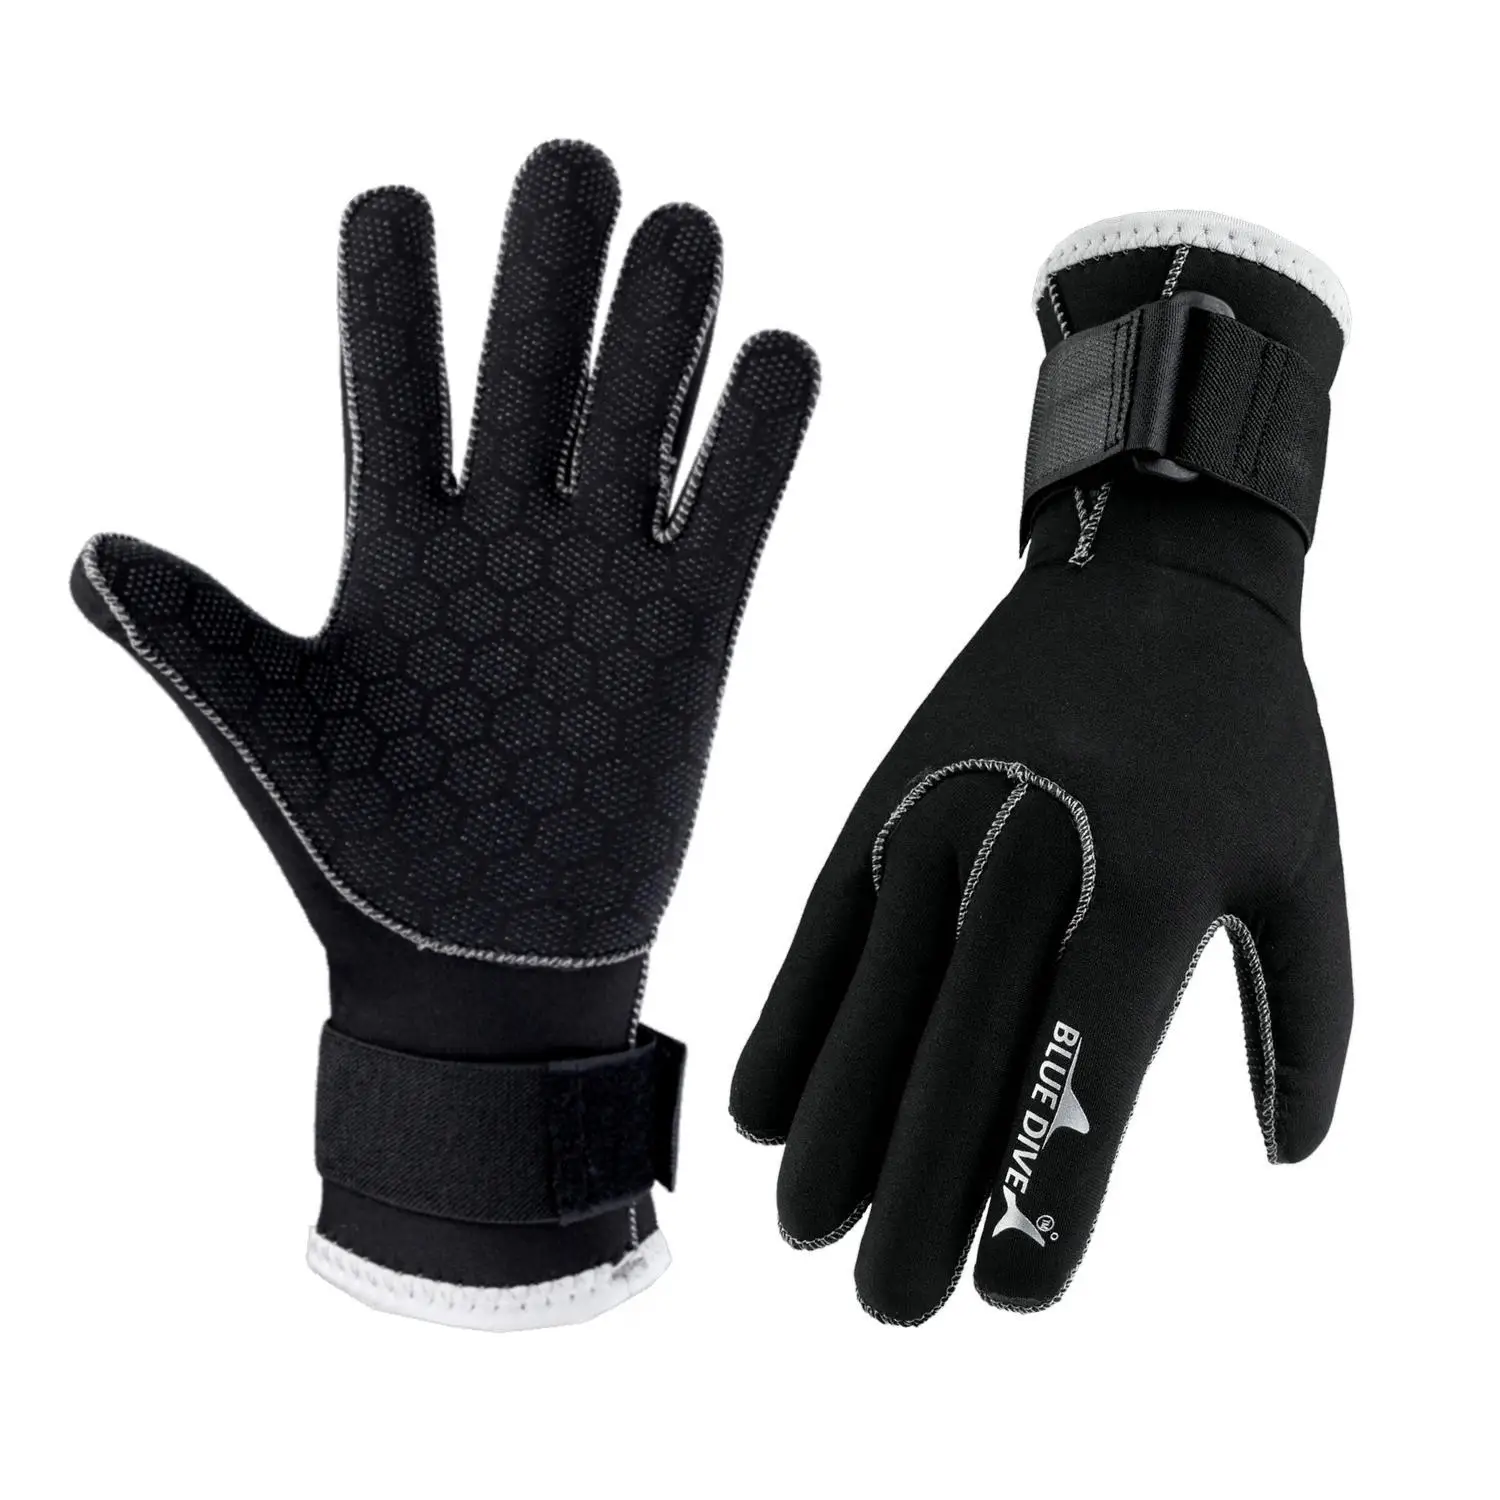 3 мм Утолщенные перчатки для подводного плавания с глубоким покрытием, водонепроницаемые, теплые, износостойкие, против царапин, Профессиональные перчатки для серфинга и дайвинга, против порезов 3